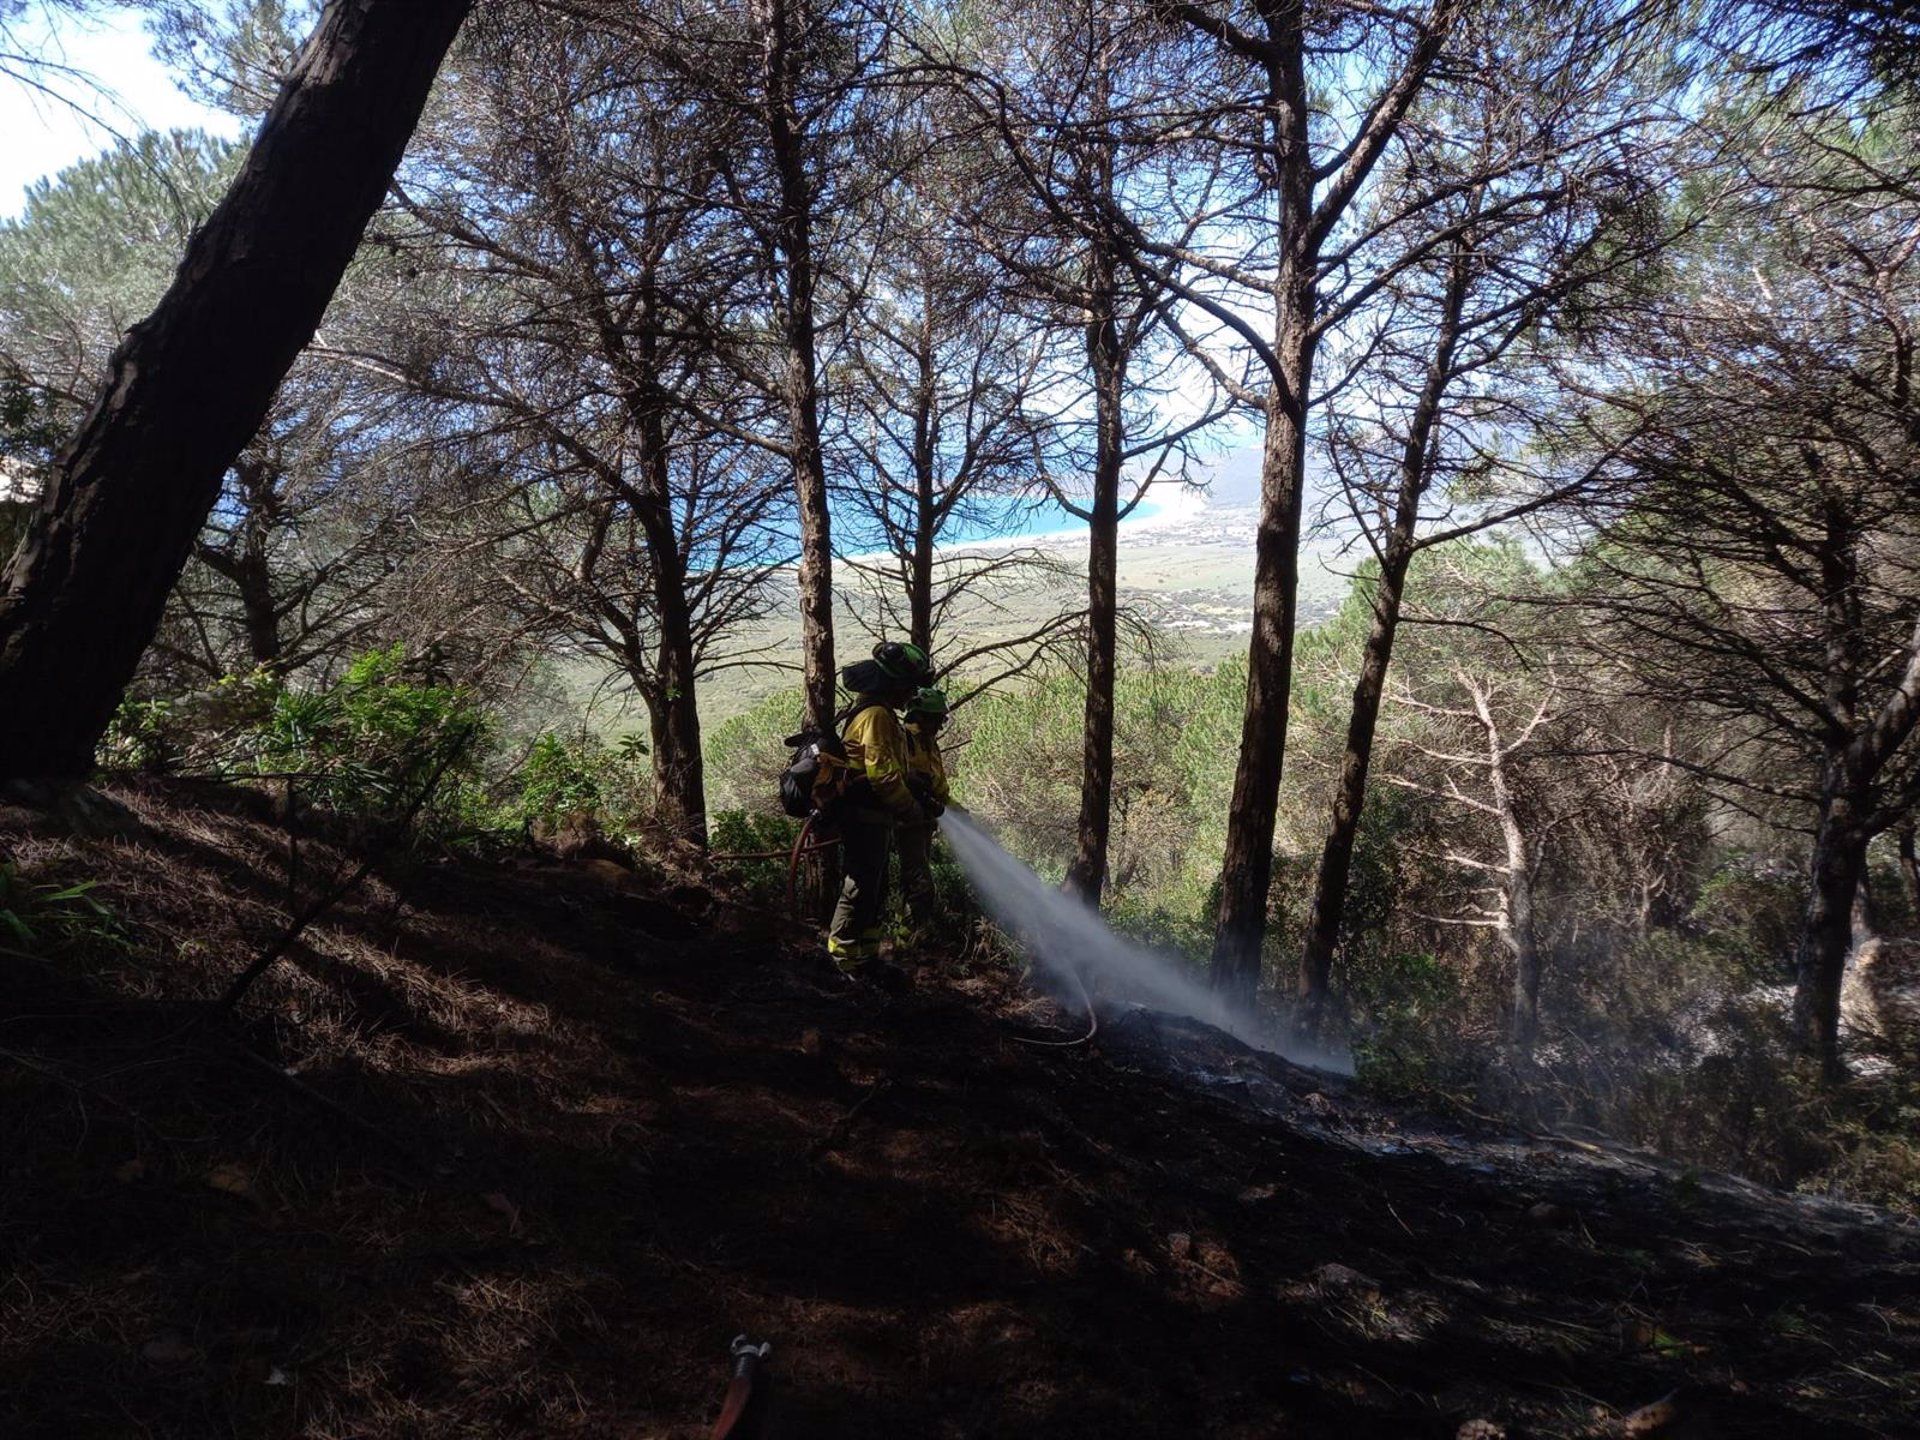 Infoca da por controlado el incendio forestal de Tarifa tras cinco días de trabajos en la zona. Un bombero forestal en el incendio de Tarifa - INFOCA.